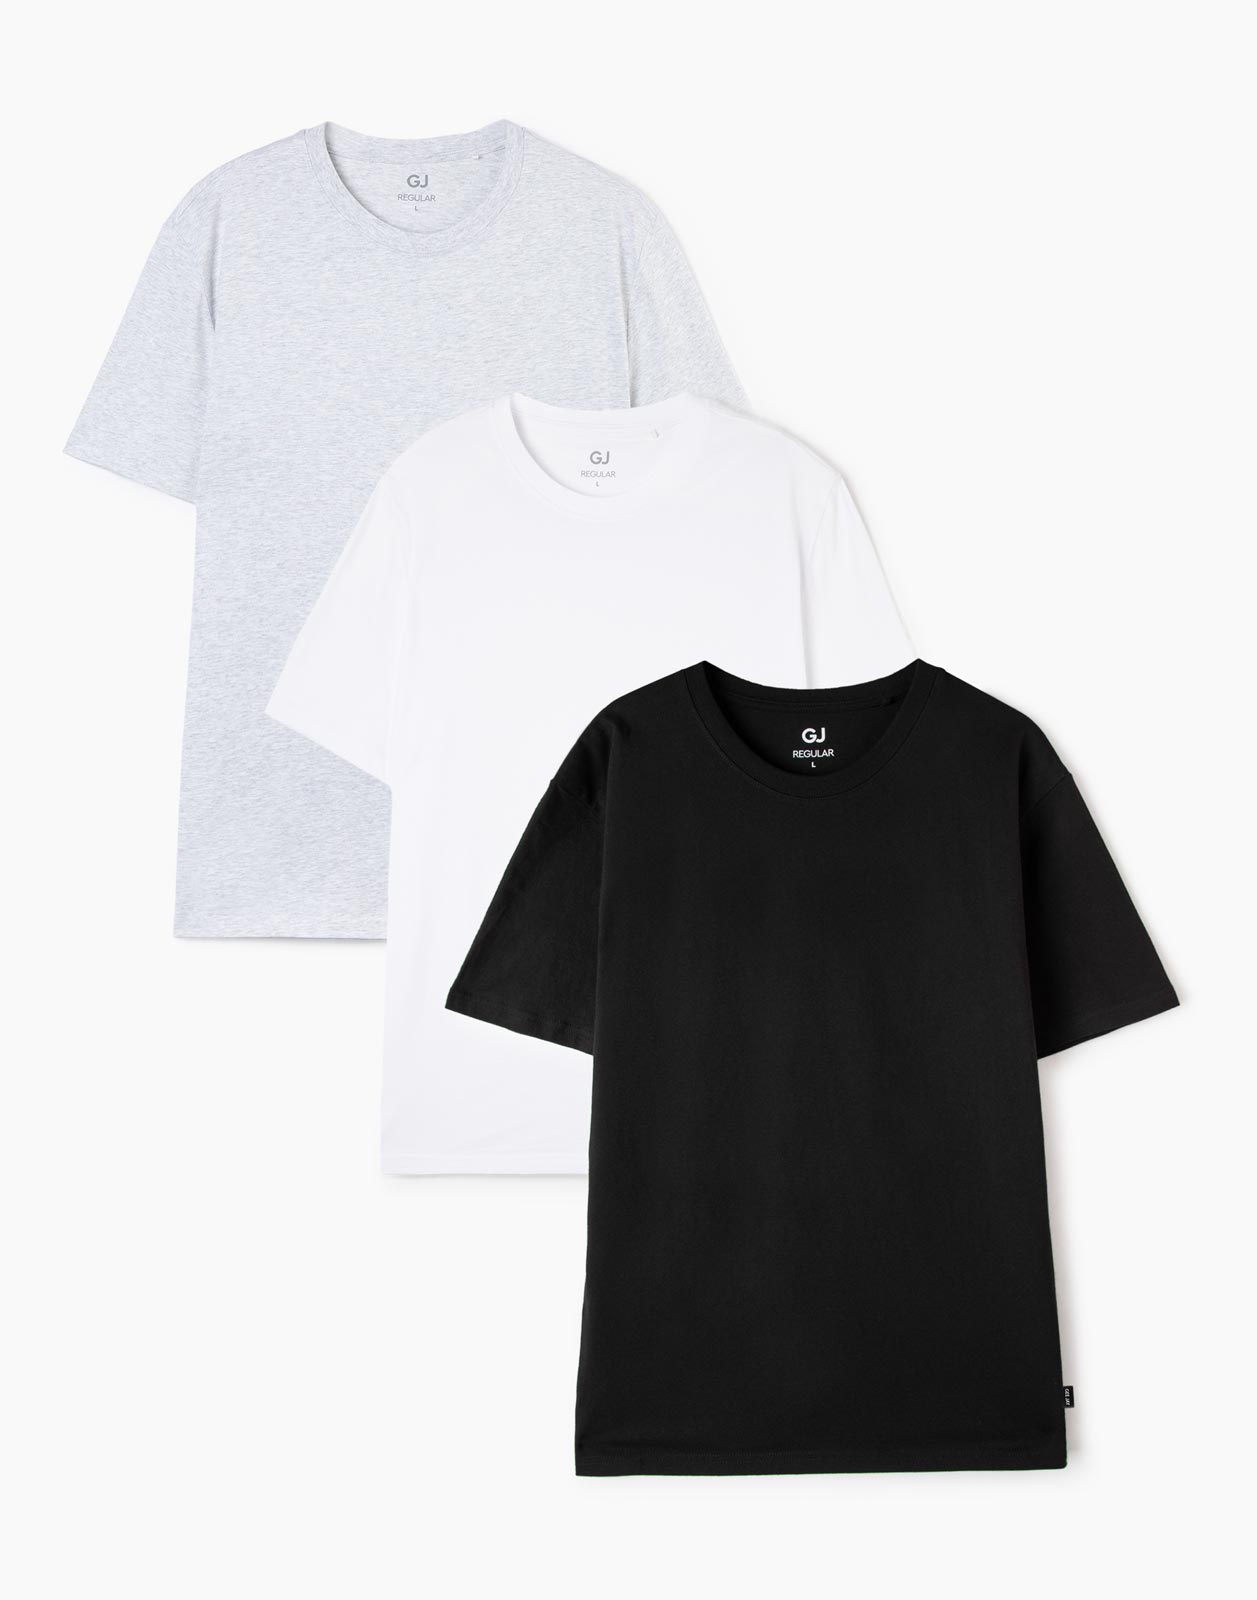 Комплект футболок мужских Gloria Jeans BSE000706 черный; белый; серый XS